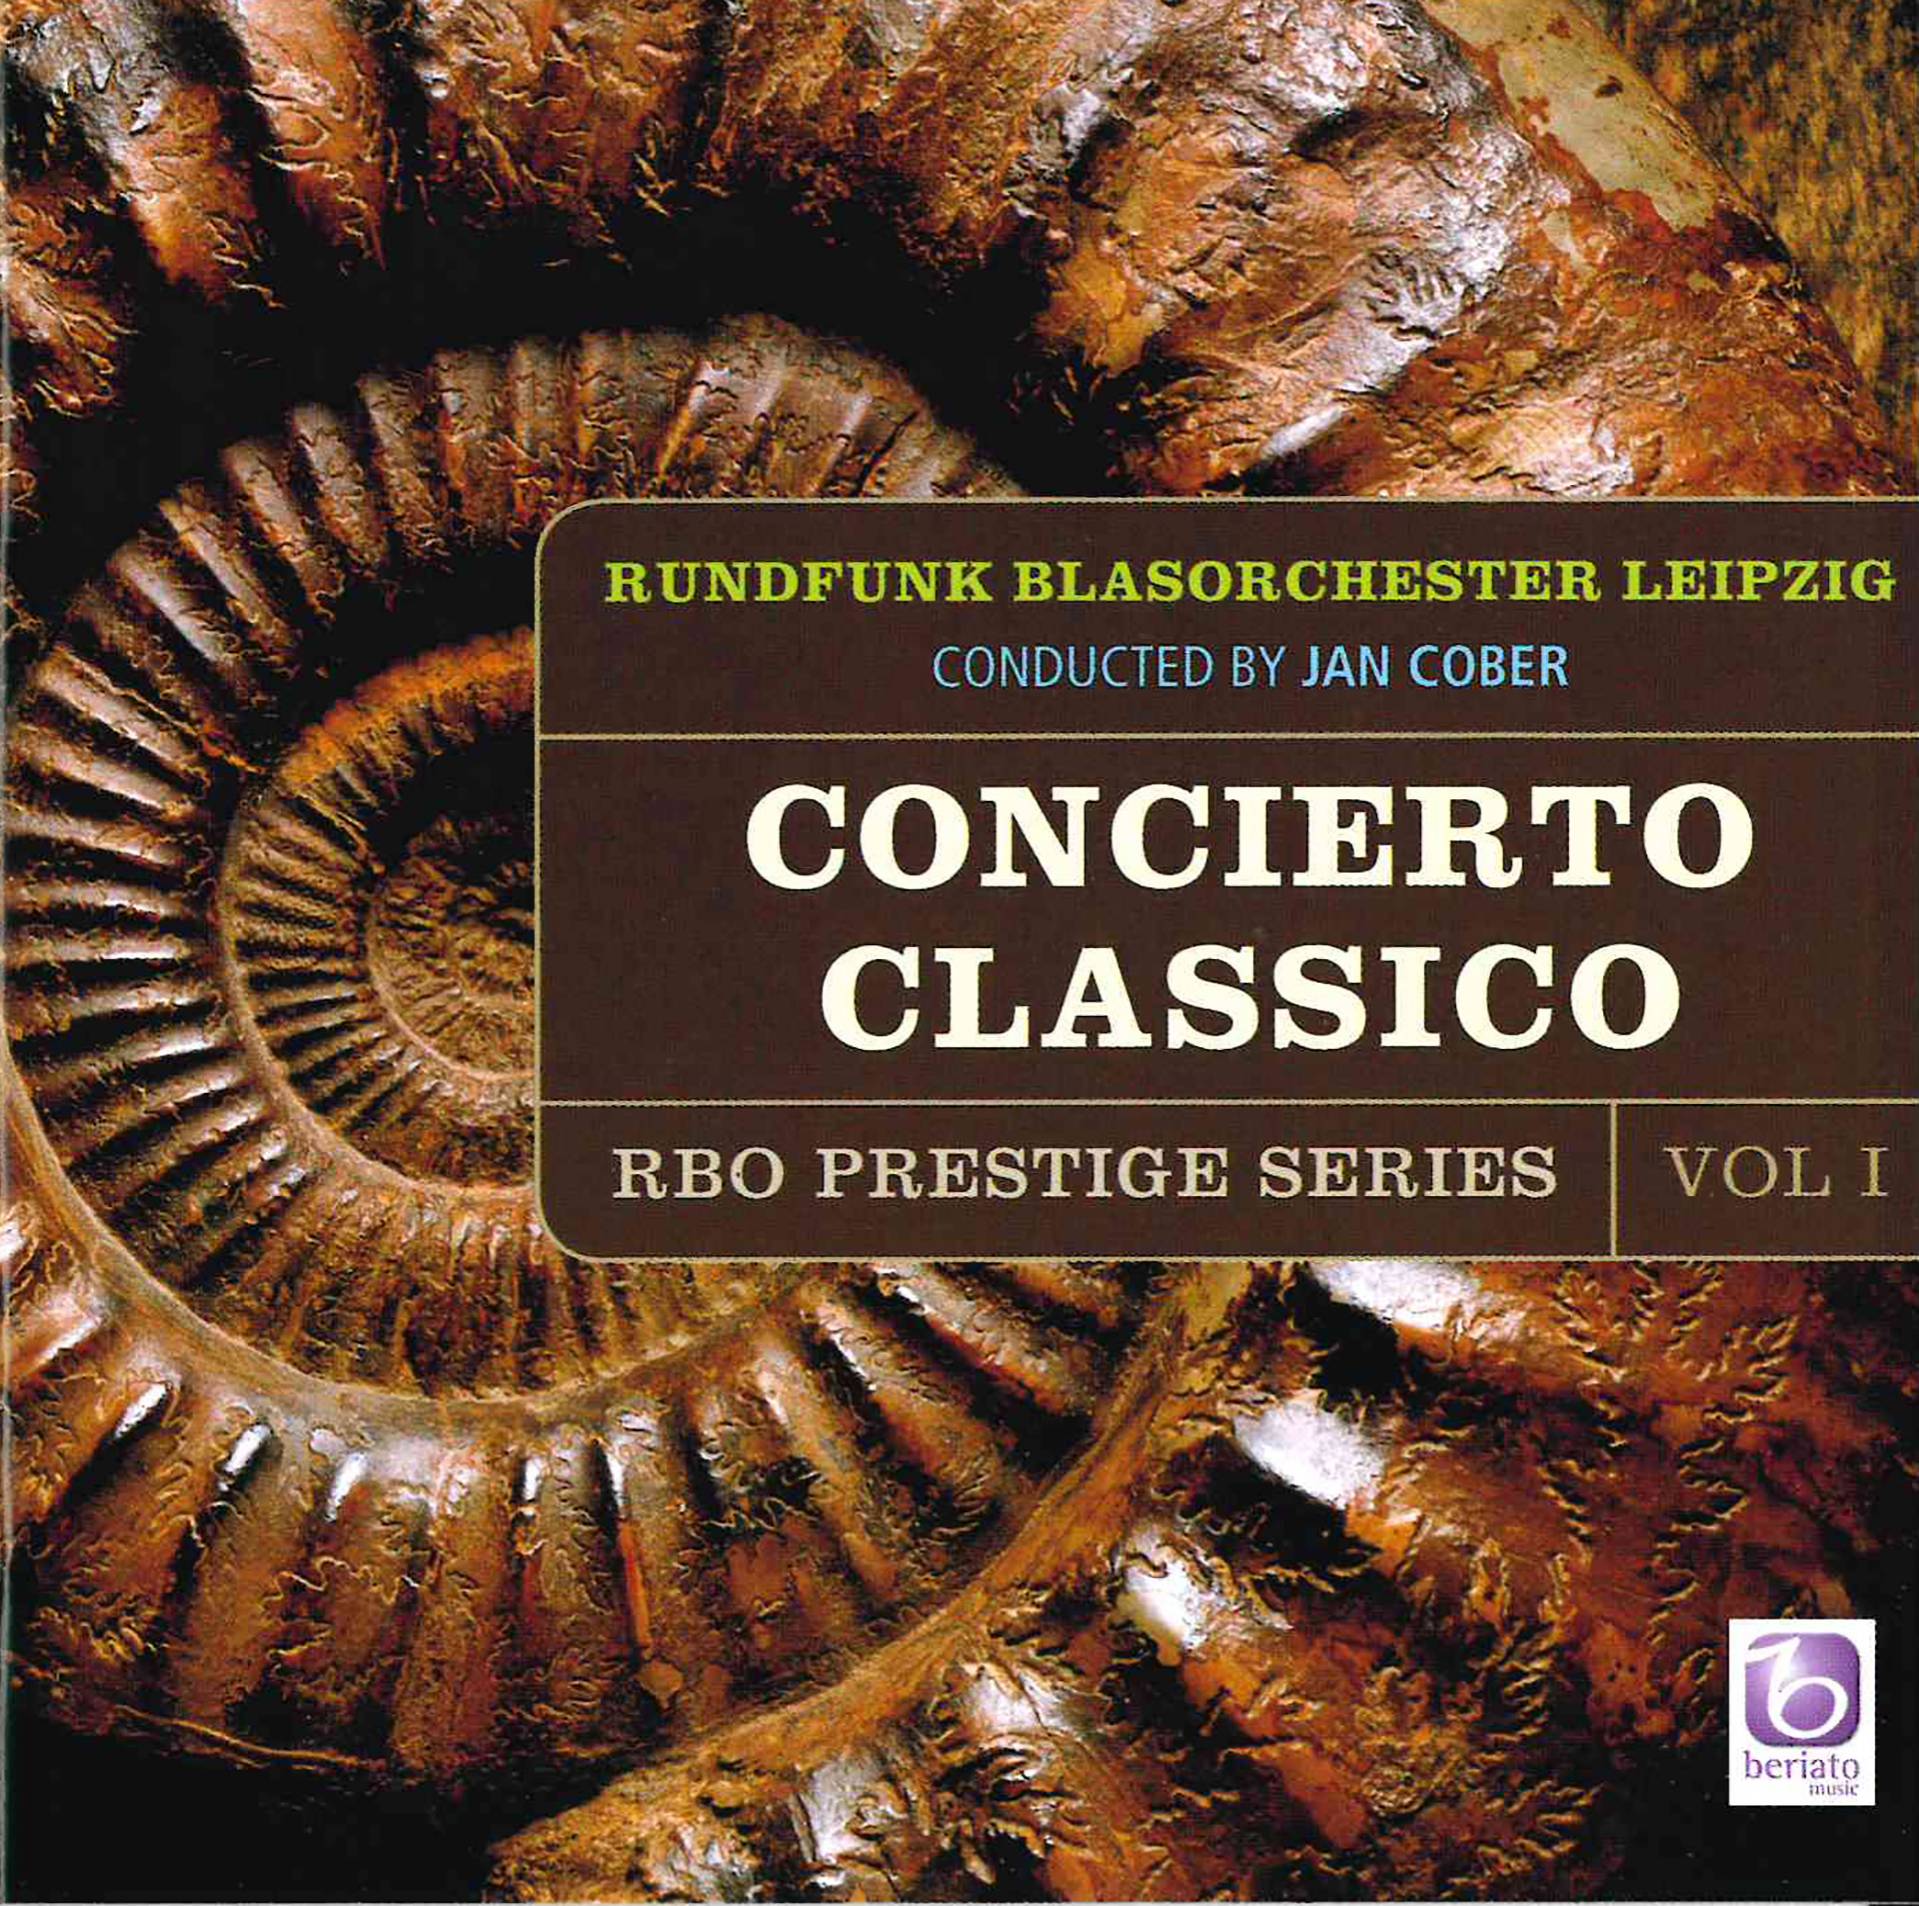 RBO Prestige Series, vol. I: Cocierto Classico